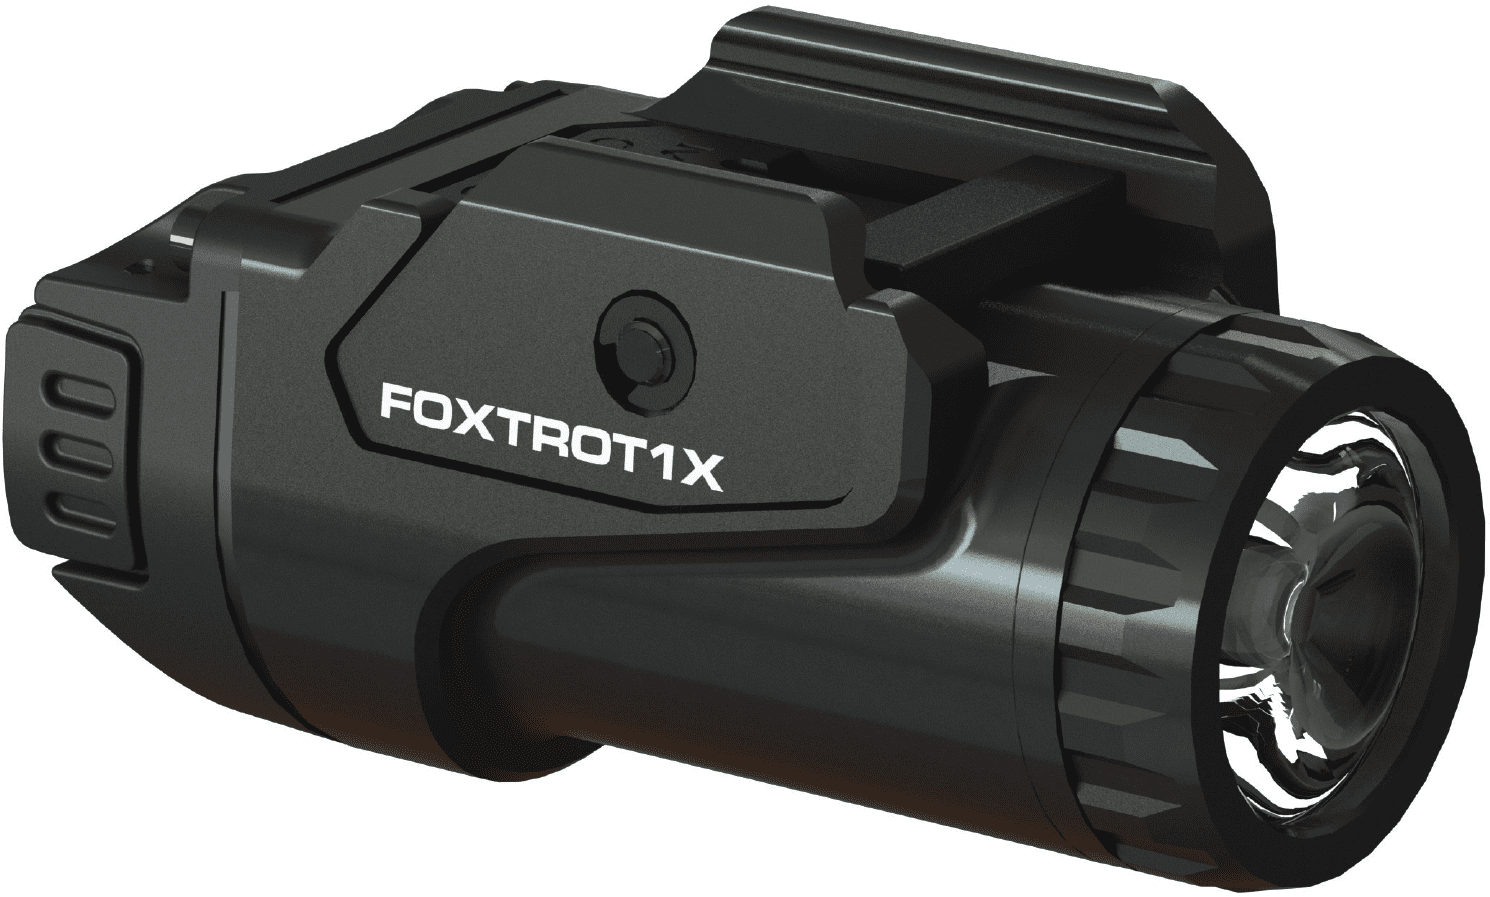 LayLax シグ SIG SAUER FOXTROT1X フラッシュライト ブラック SOF12001 シュアファイヤー ライト 国内正規品 実物